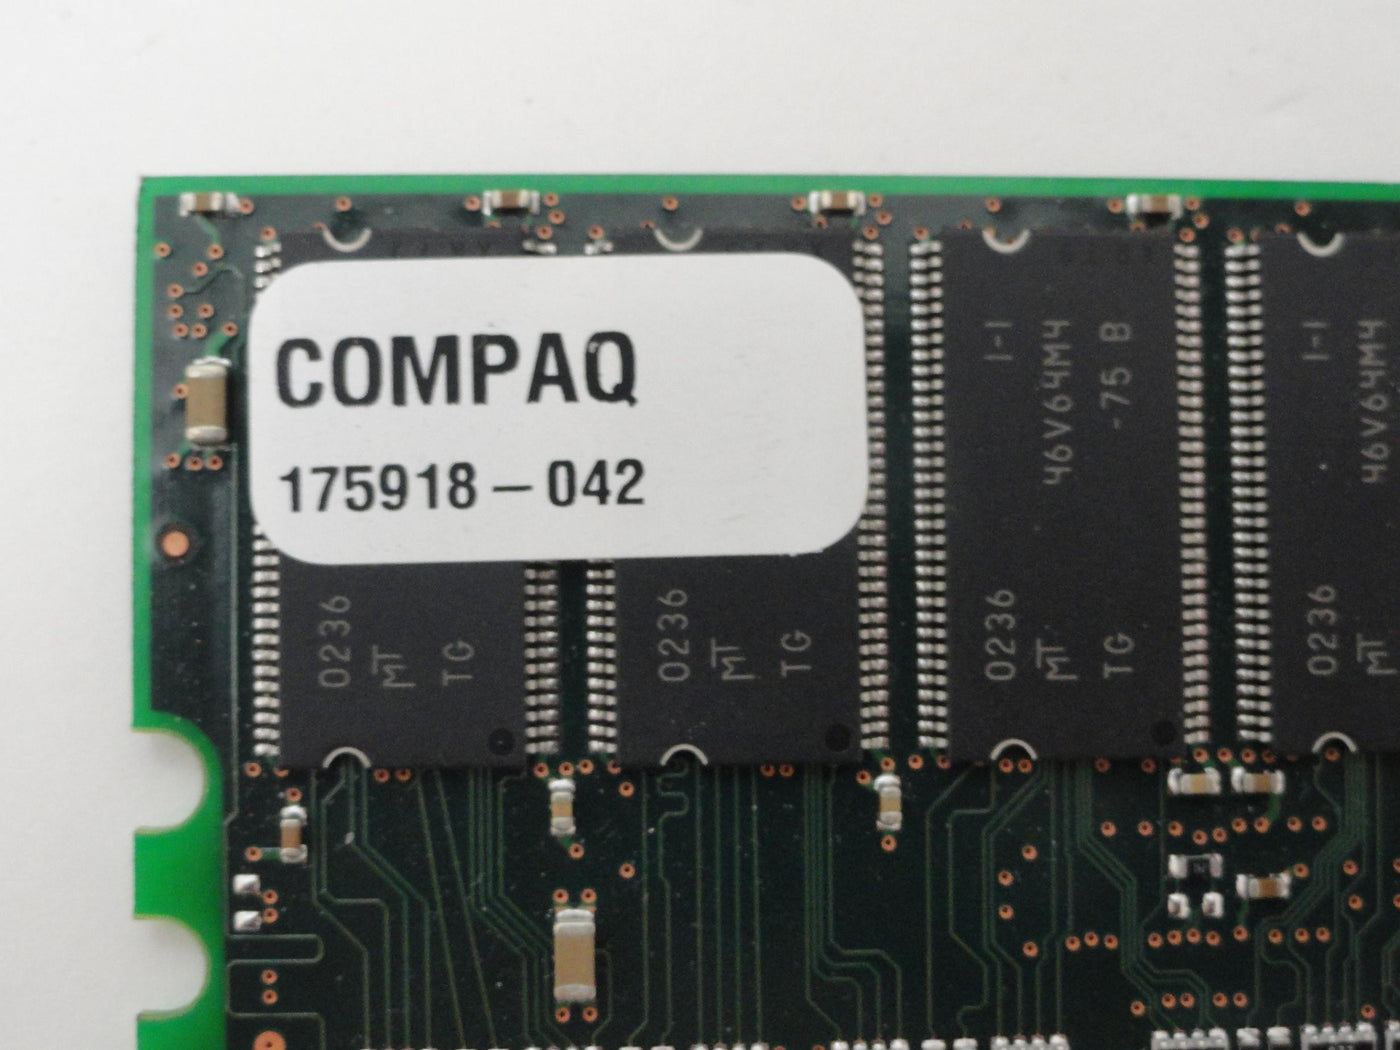 PR16909_PC1600R-2220-B2_Micron HP 512Mb 200MHz ECC CL2 DDR RAM Module - Image2